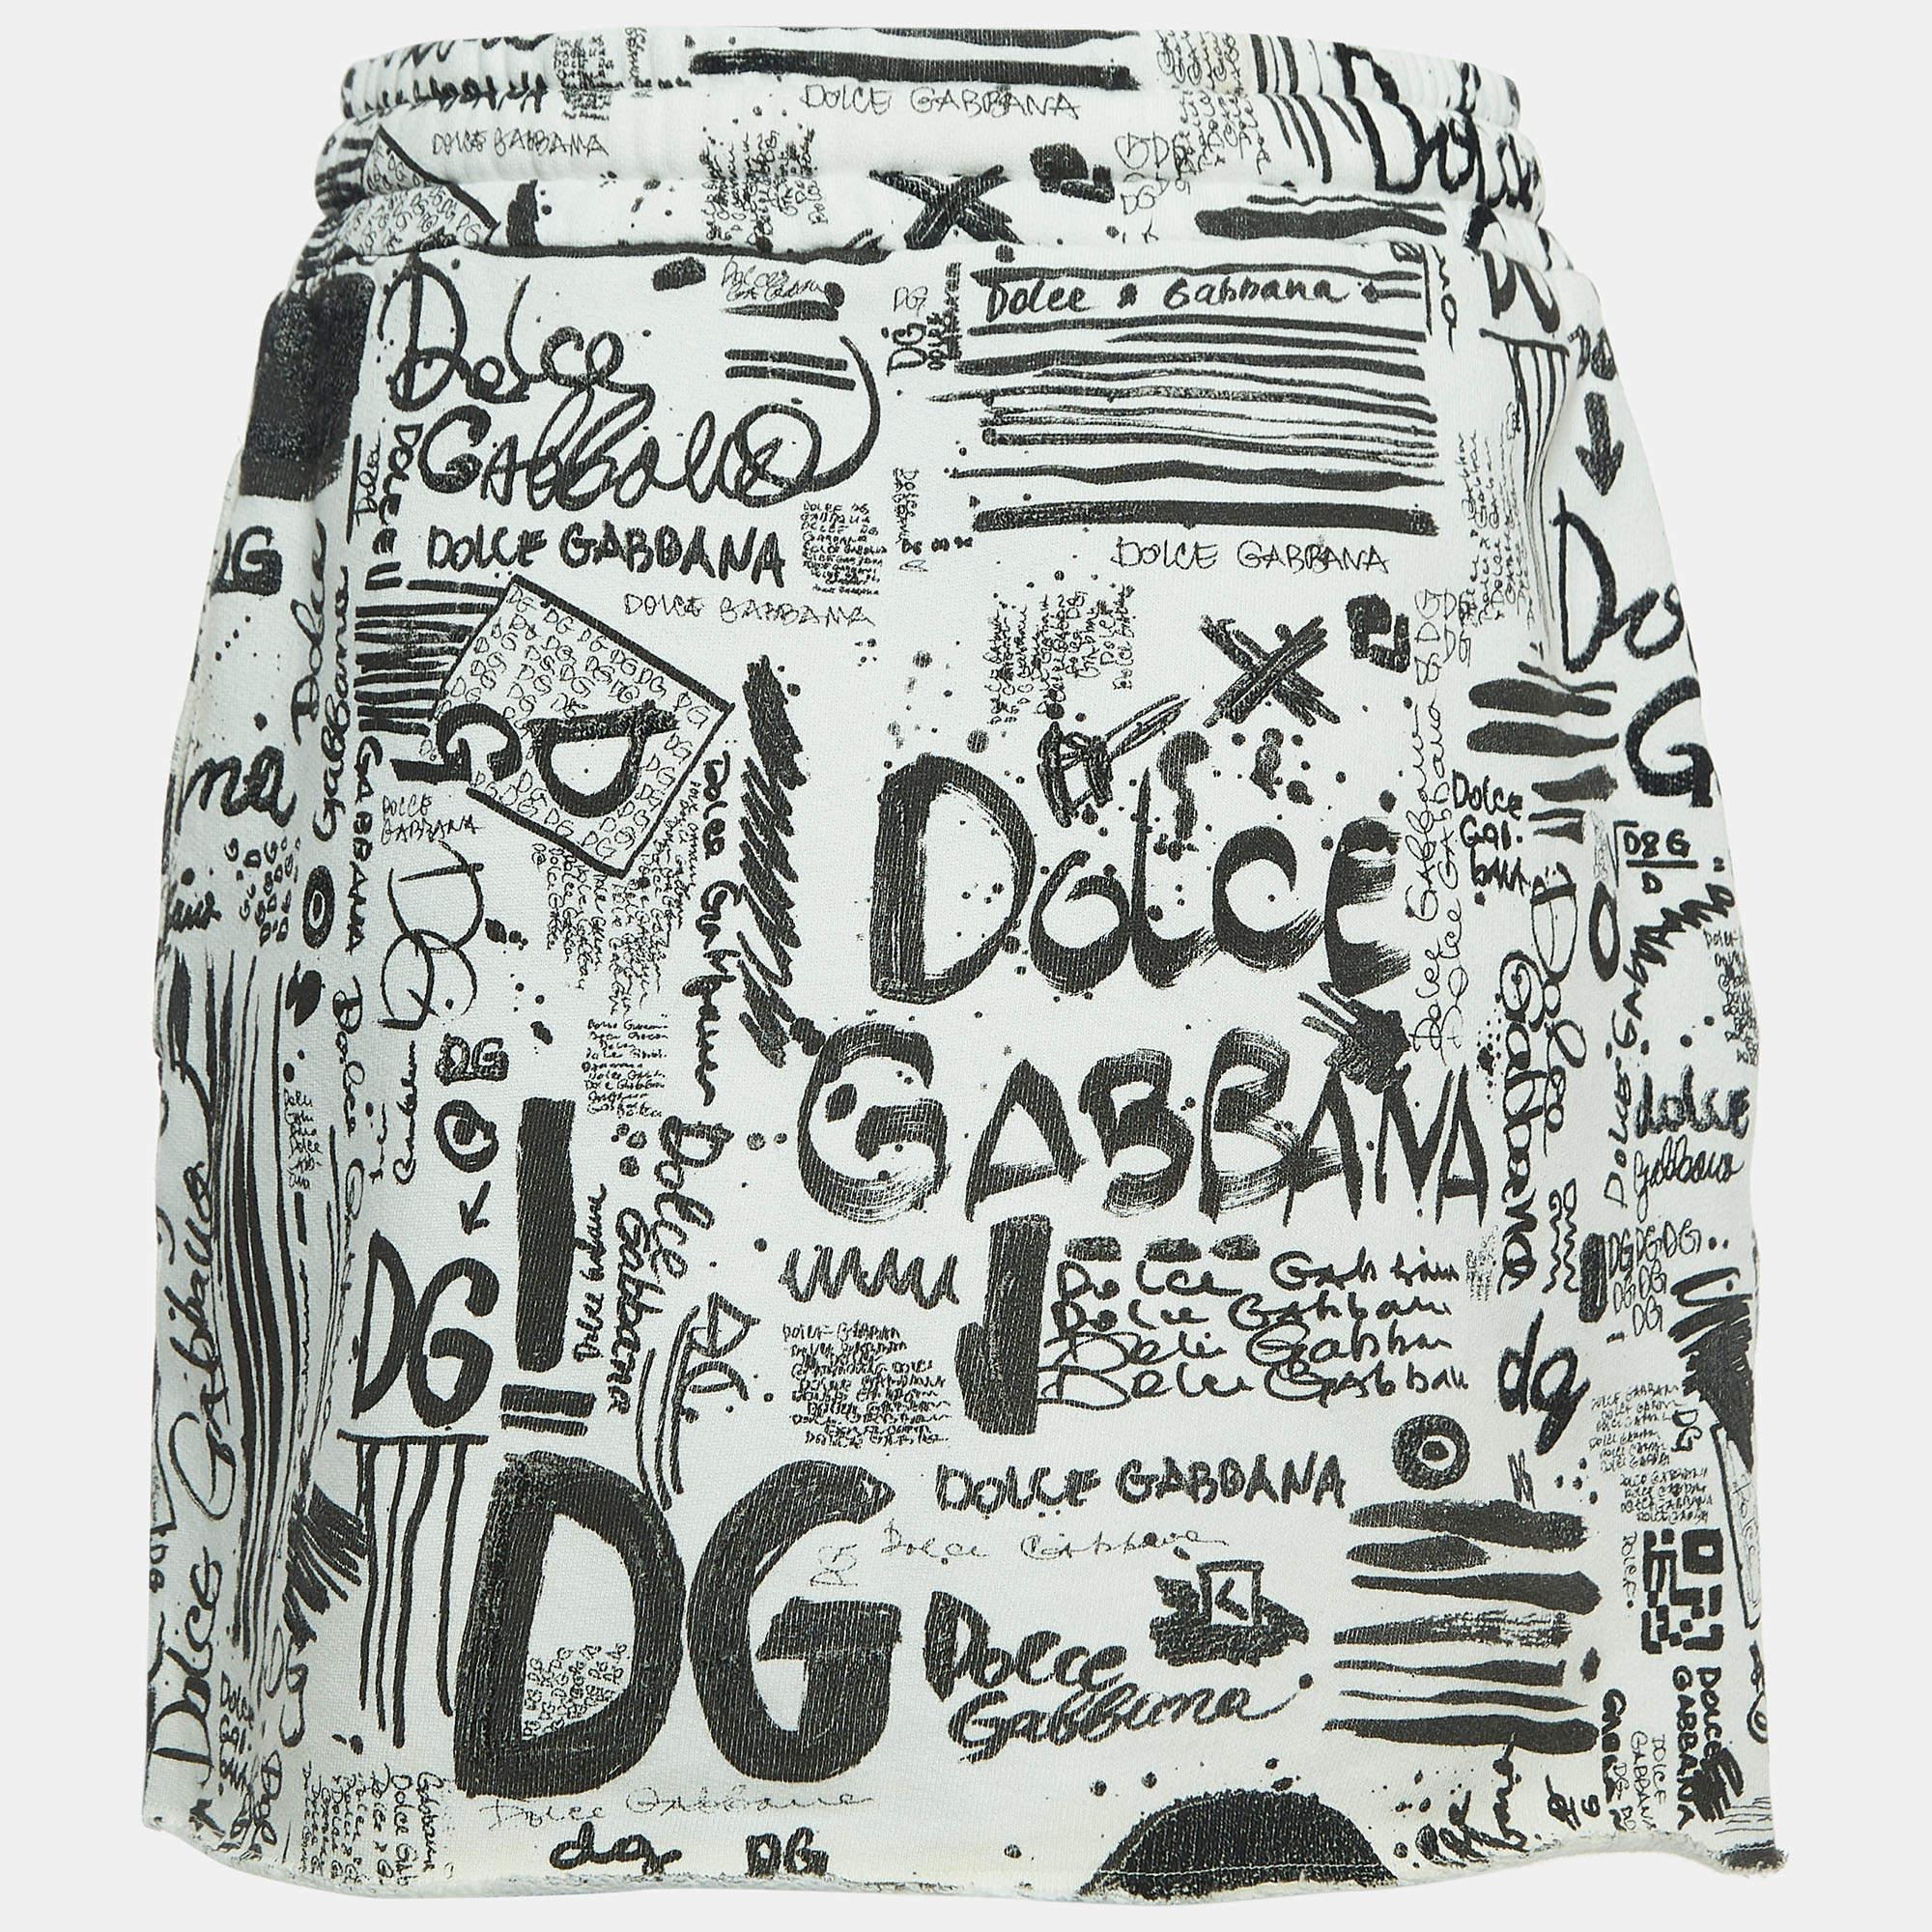 Setzen Sie modische Akzente mit diesem Rock von Dolce & Gabbana. Es ist aus einer Baumwollmischung gefertigt und die schlichte Silhouette ist mit Graffiti-Prints versehen.

